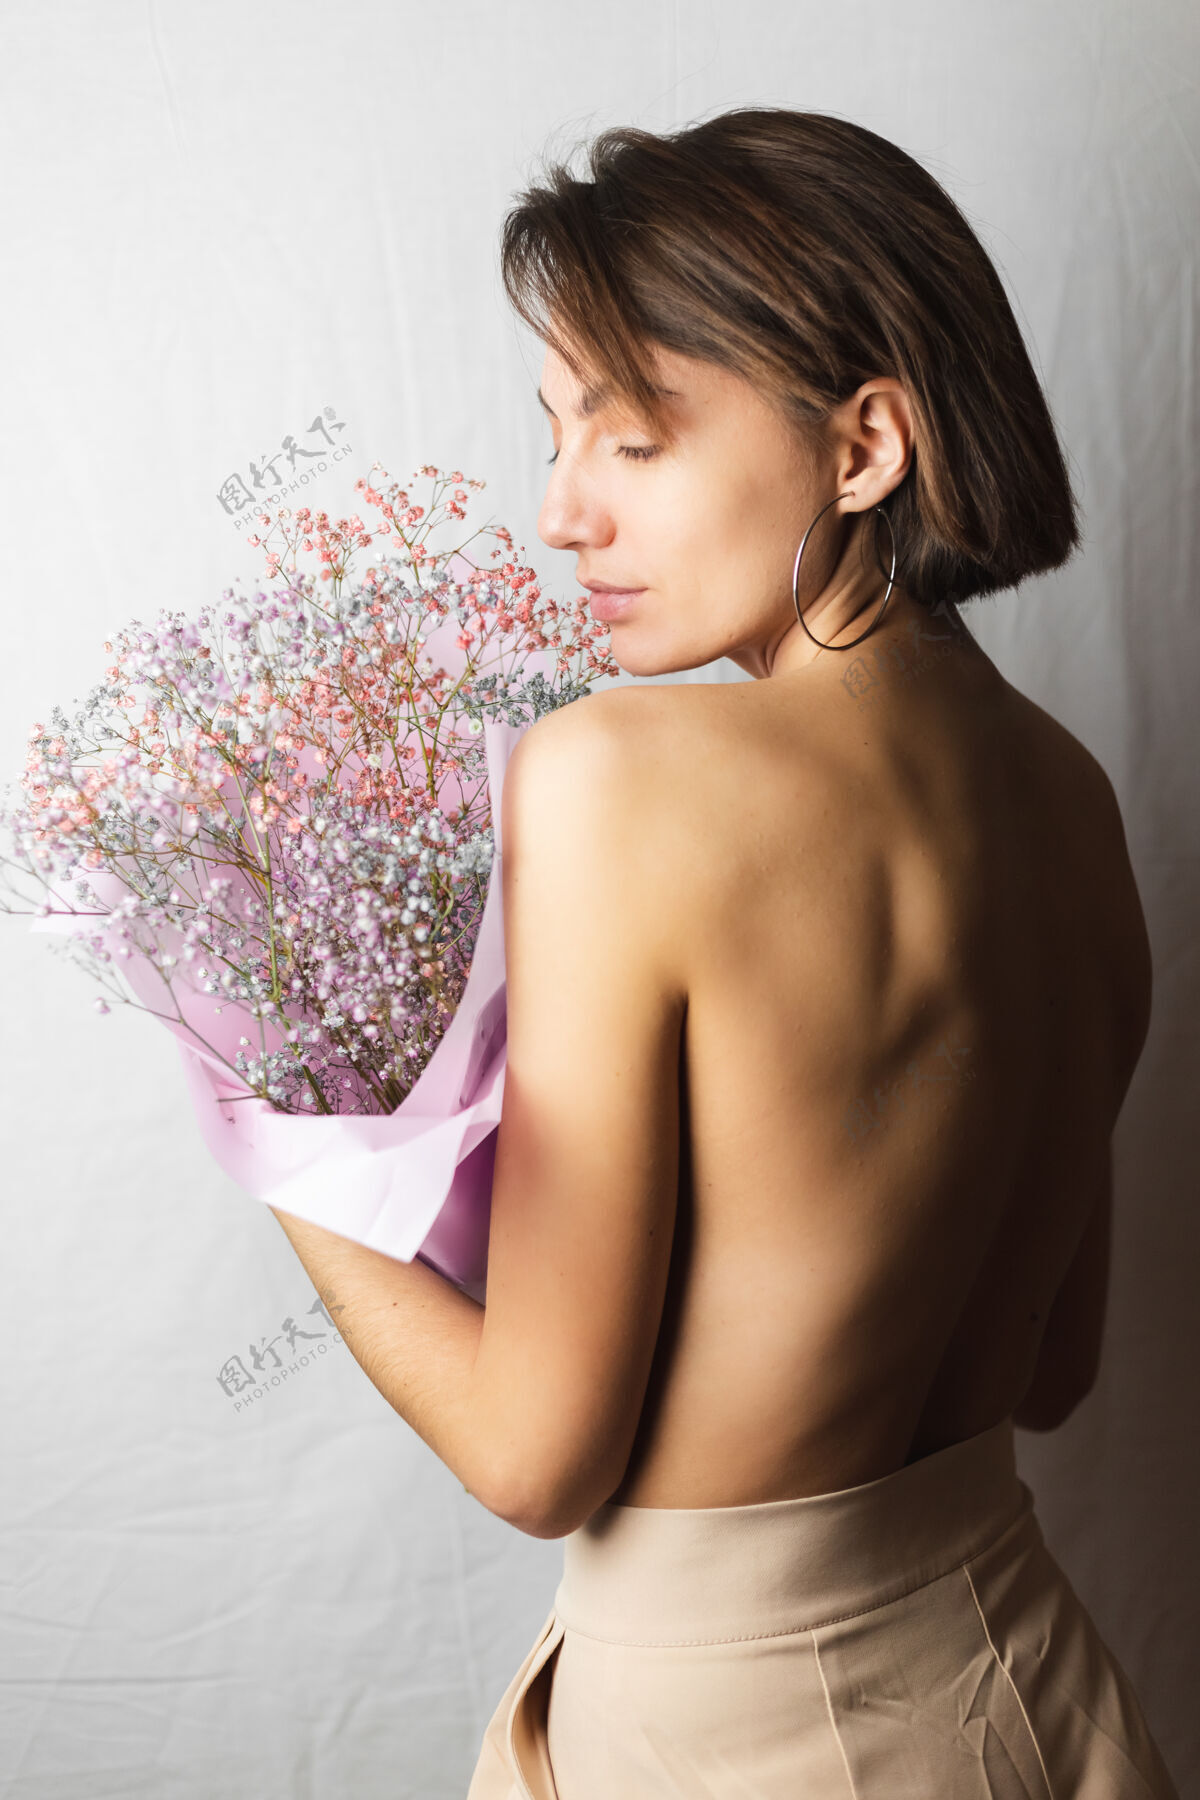 心情一位年轻女子的温柔写照 身穿白色抹布 赤裸上身 手持一束干枯多色的鲜花 微笑可爱 期待春天的到来植物新鲜模特